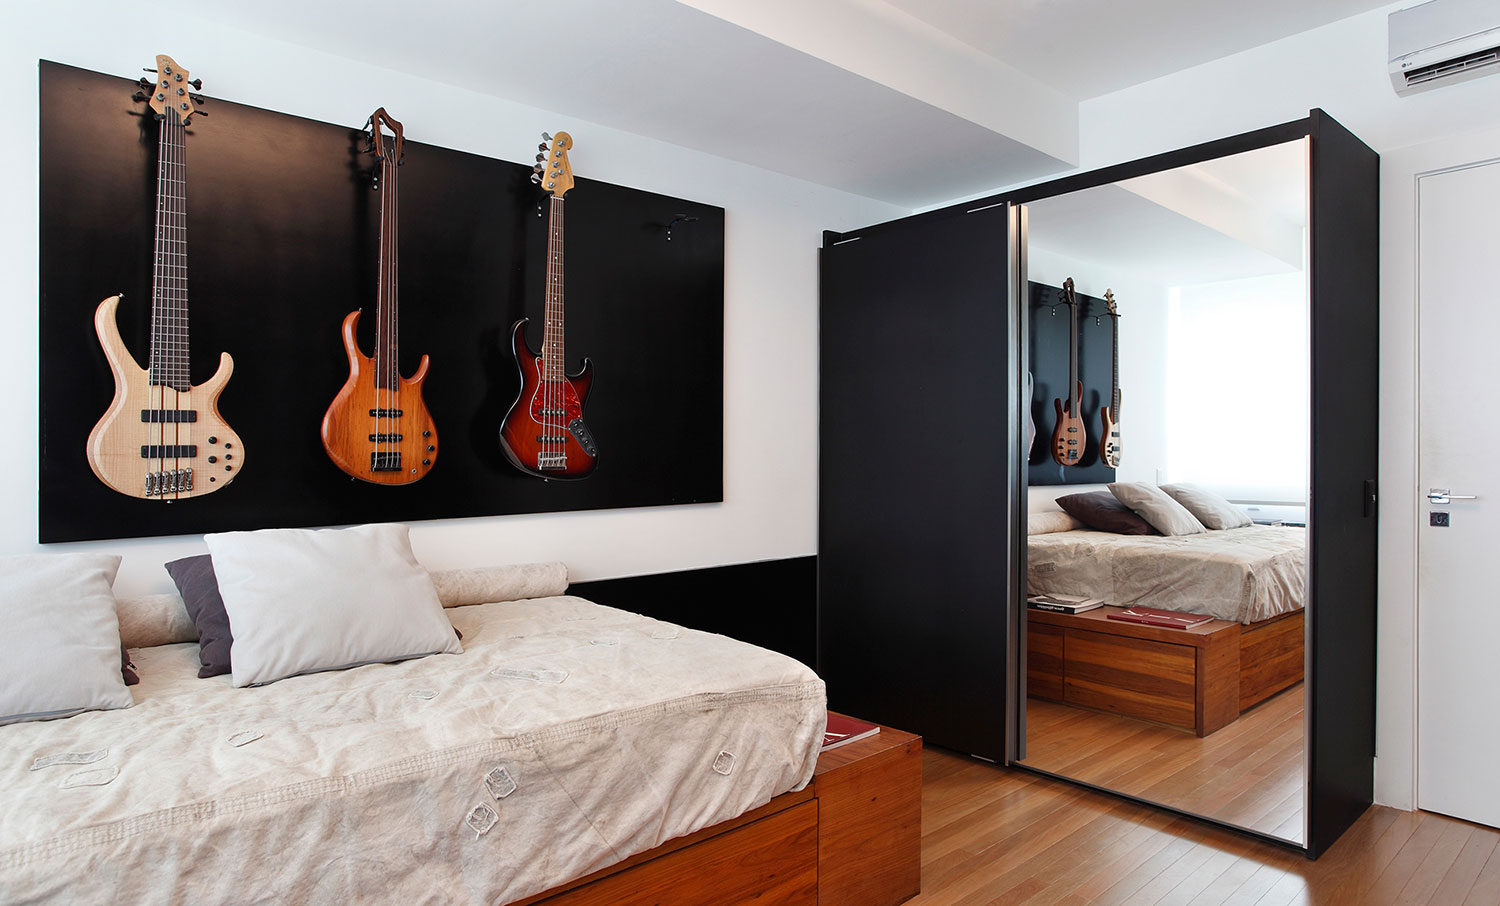 O painel deu espaço para expor as guitarras que servem como objetos decorativos